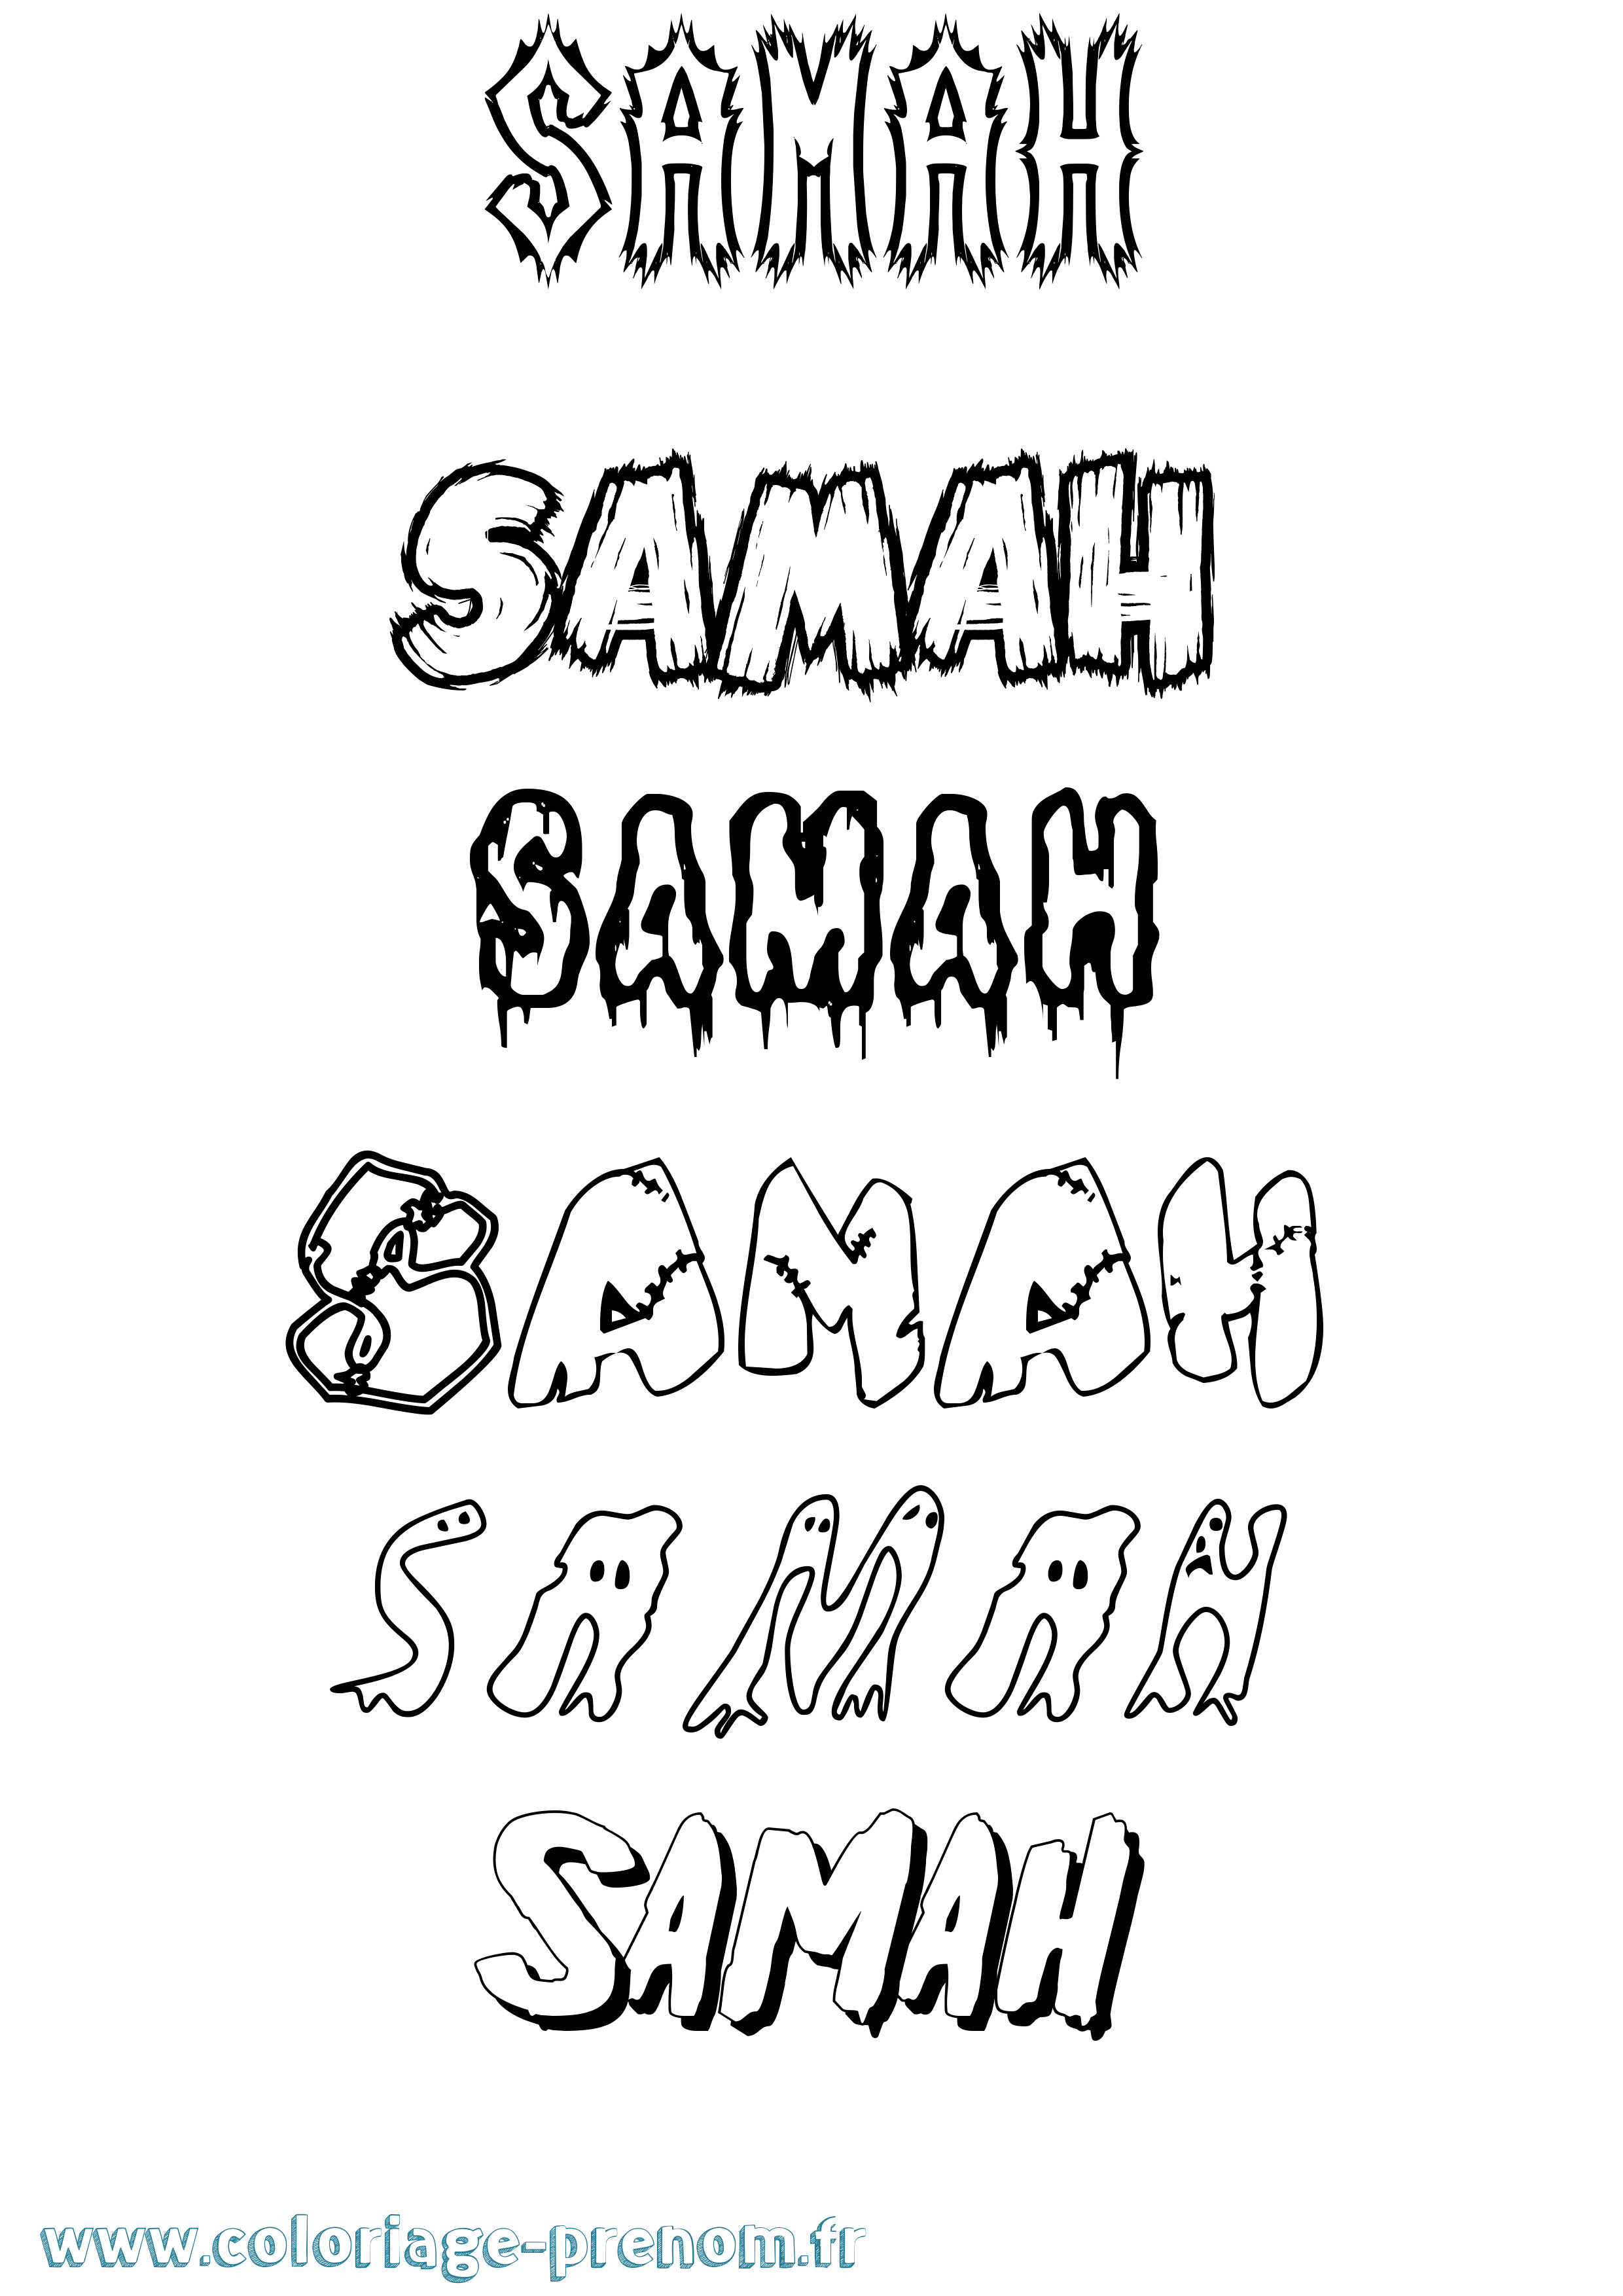 Coloriage prénom Samah Frisson